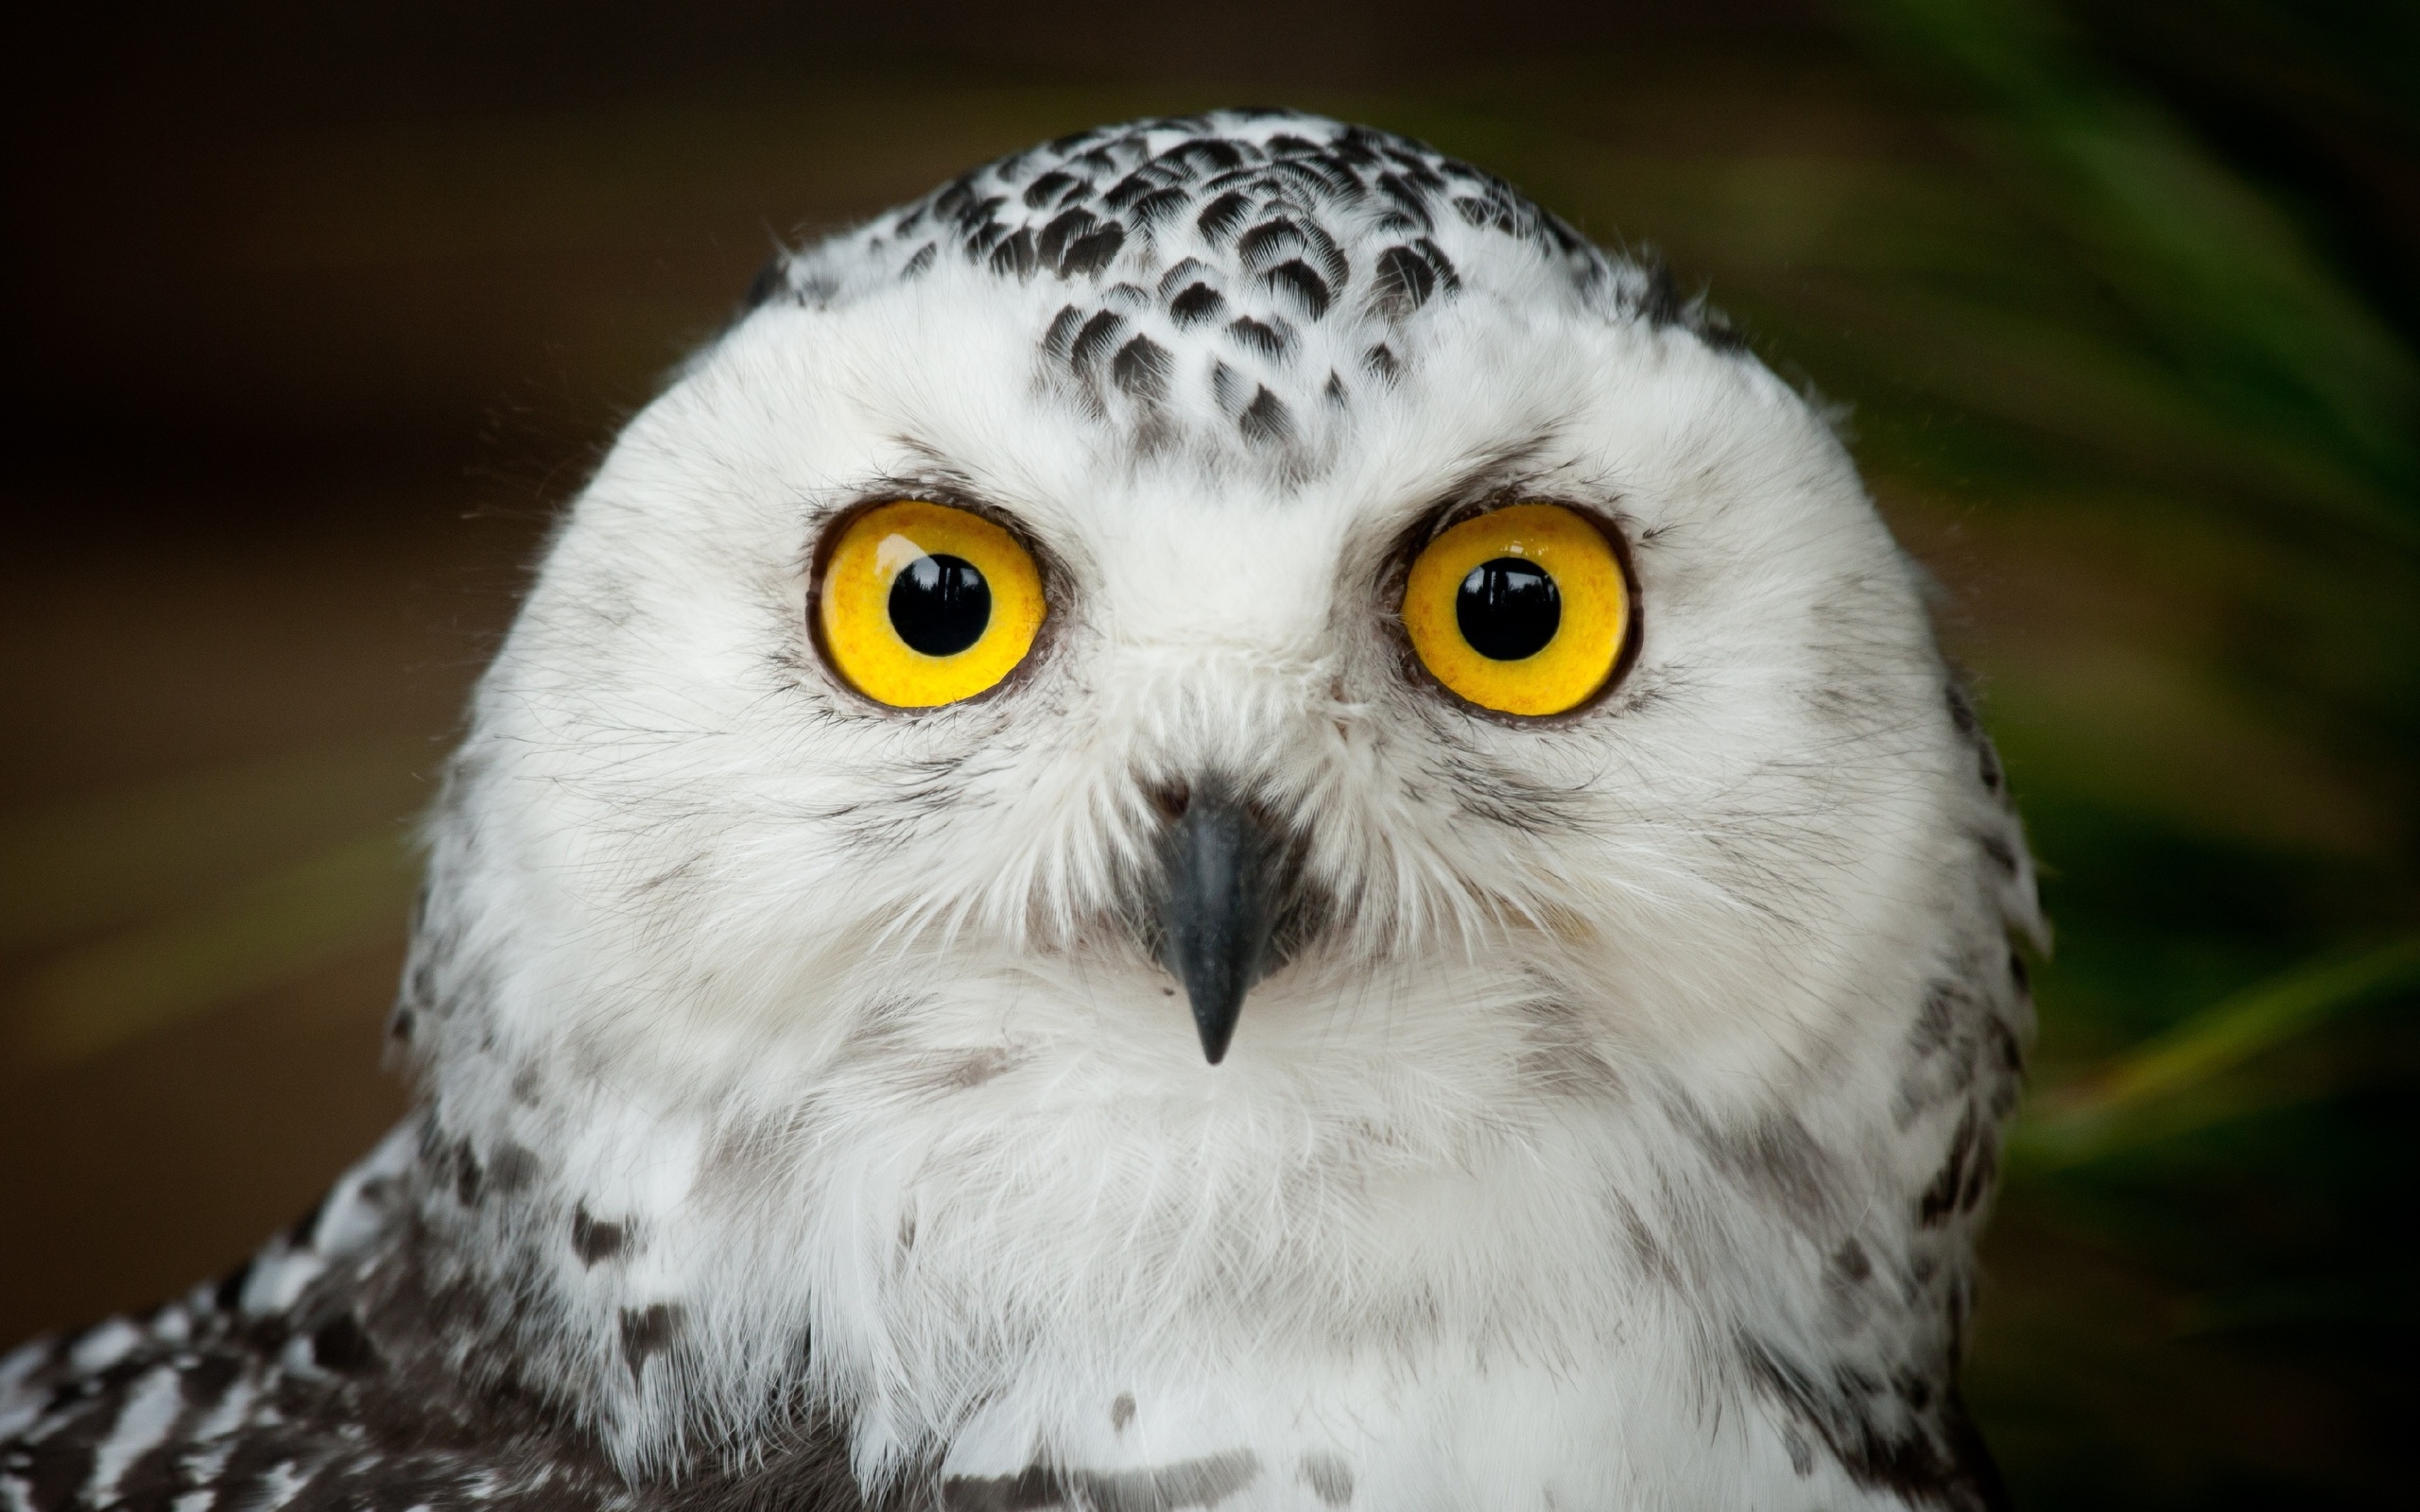 Owl bird head eyes g wallpaper | 2560x1600 | 166597 | WallpaperUP